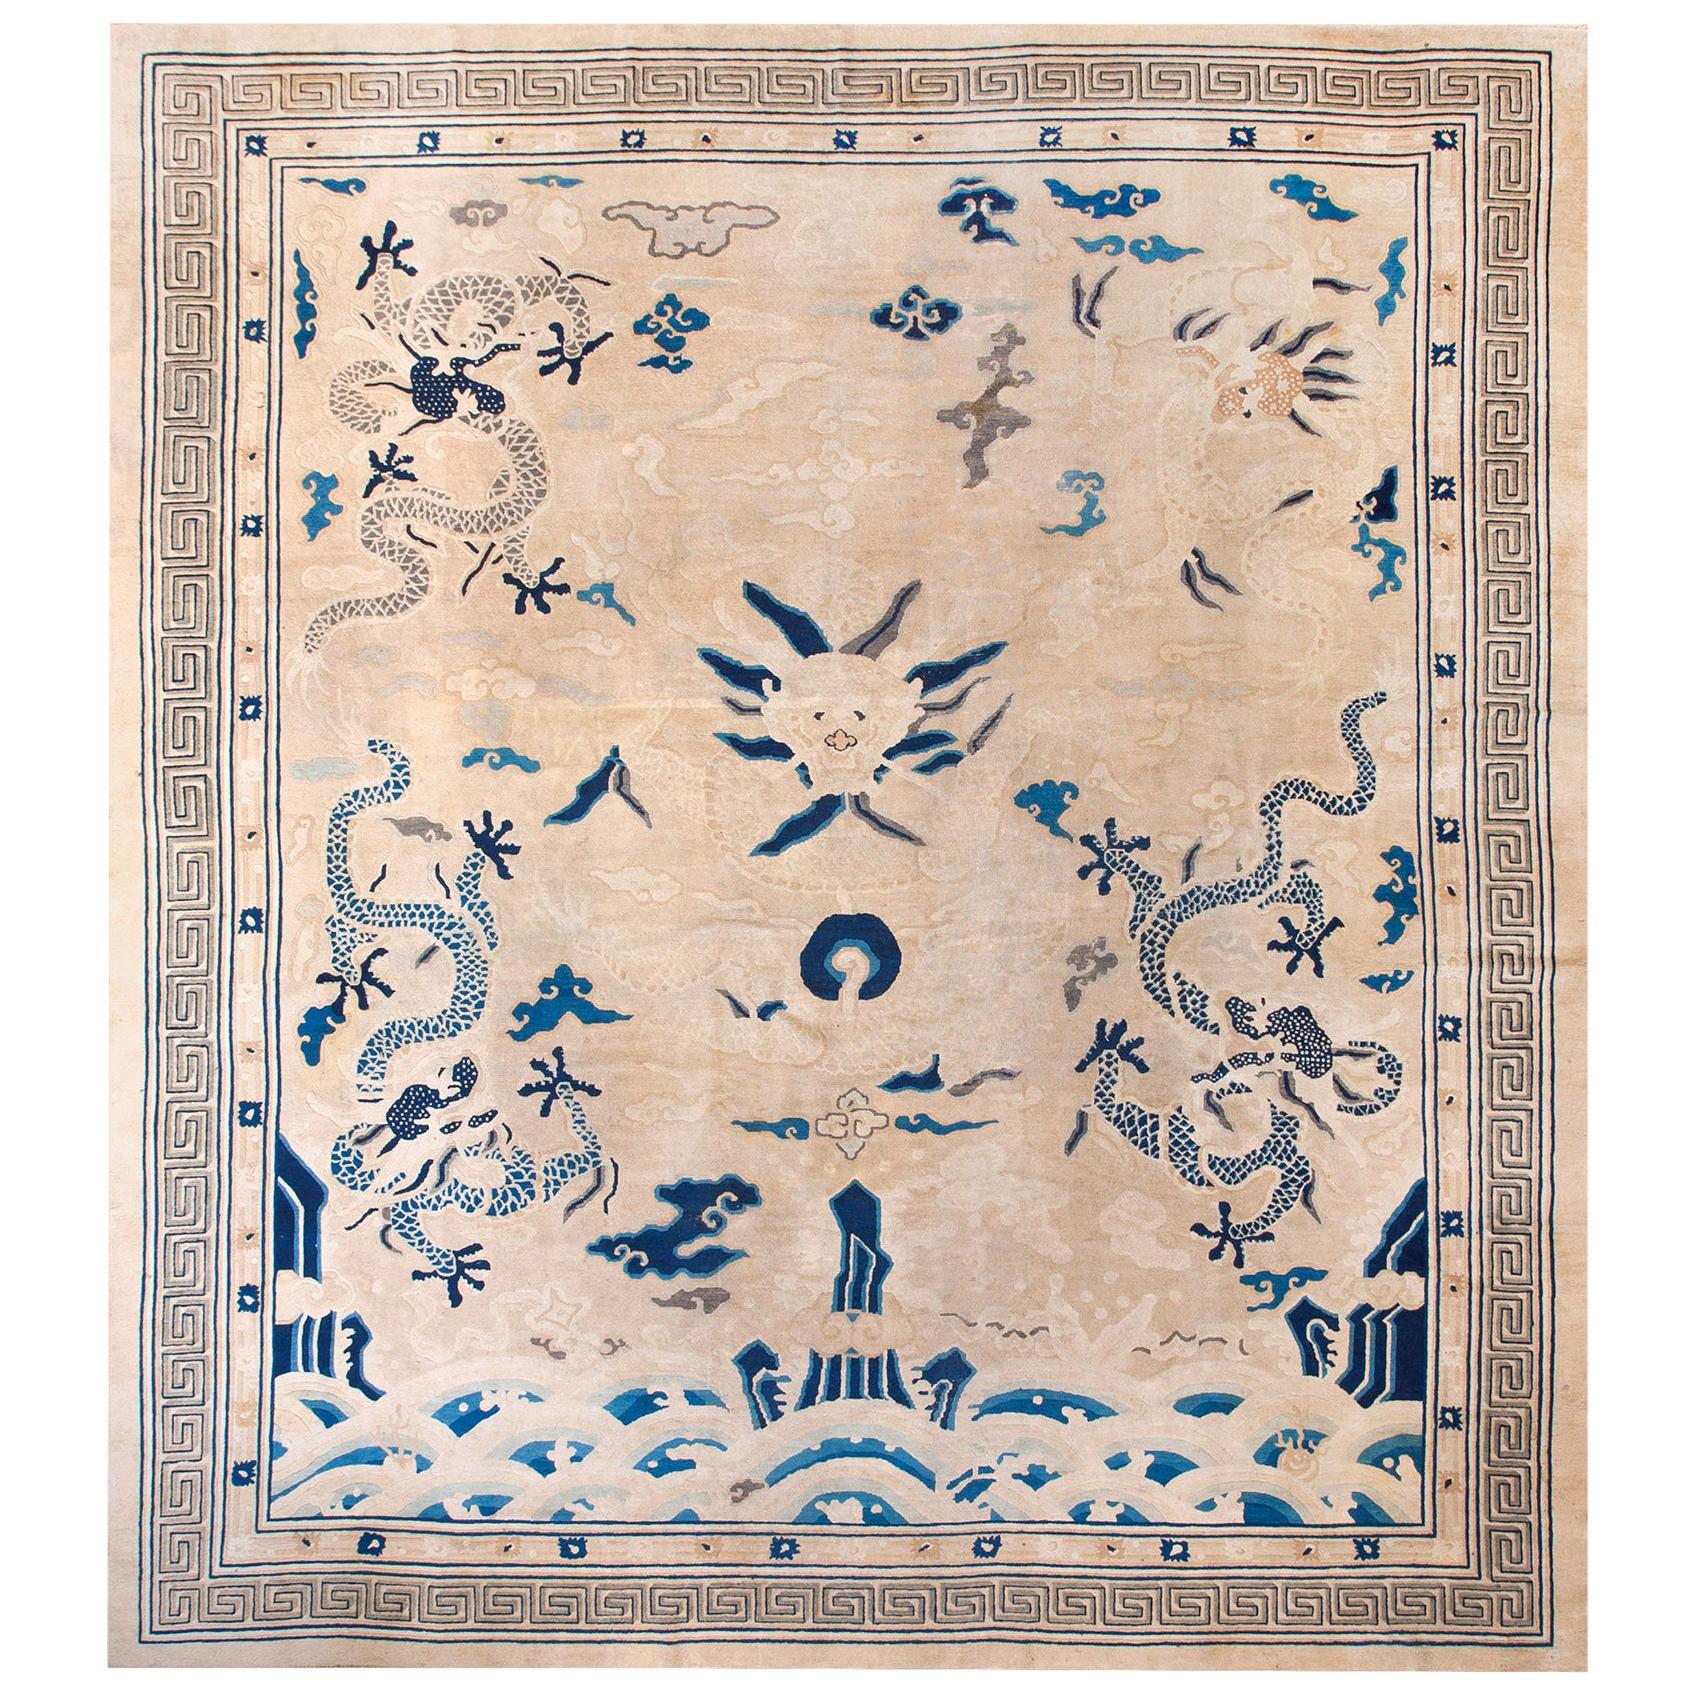 19th Century Chinese Peking Dragon Carpet ( 11'10" x 12'6" - 360 x 380 )